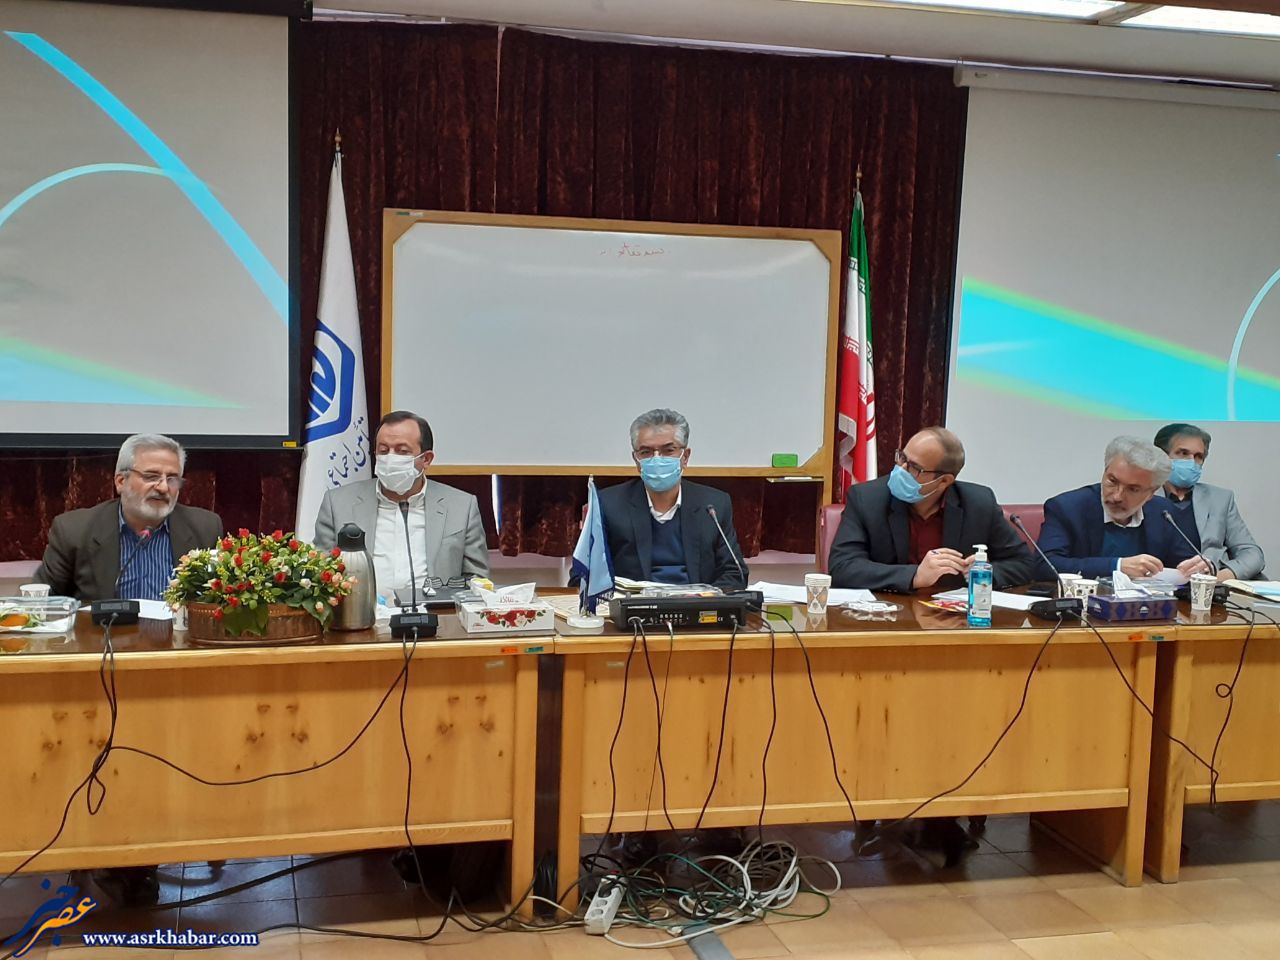 جزئیات جلسه کمیسیون نظارت بر درمان تامین اجتماعی استان تهران/خدایی: منکر خدمات نیستیم ،ماهیت کمیسیون طرح کاستی هاست